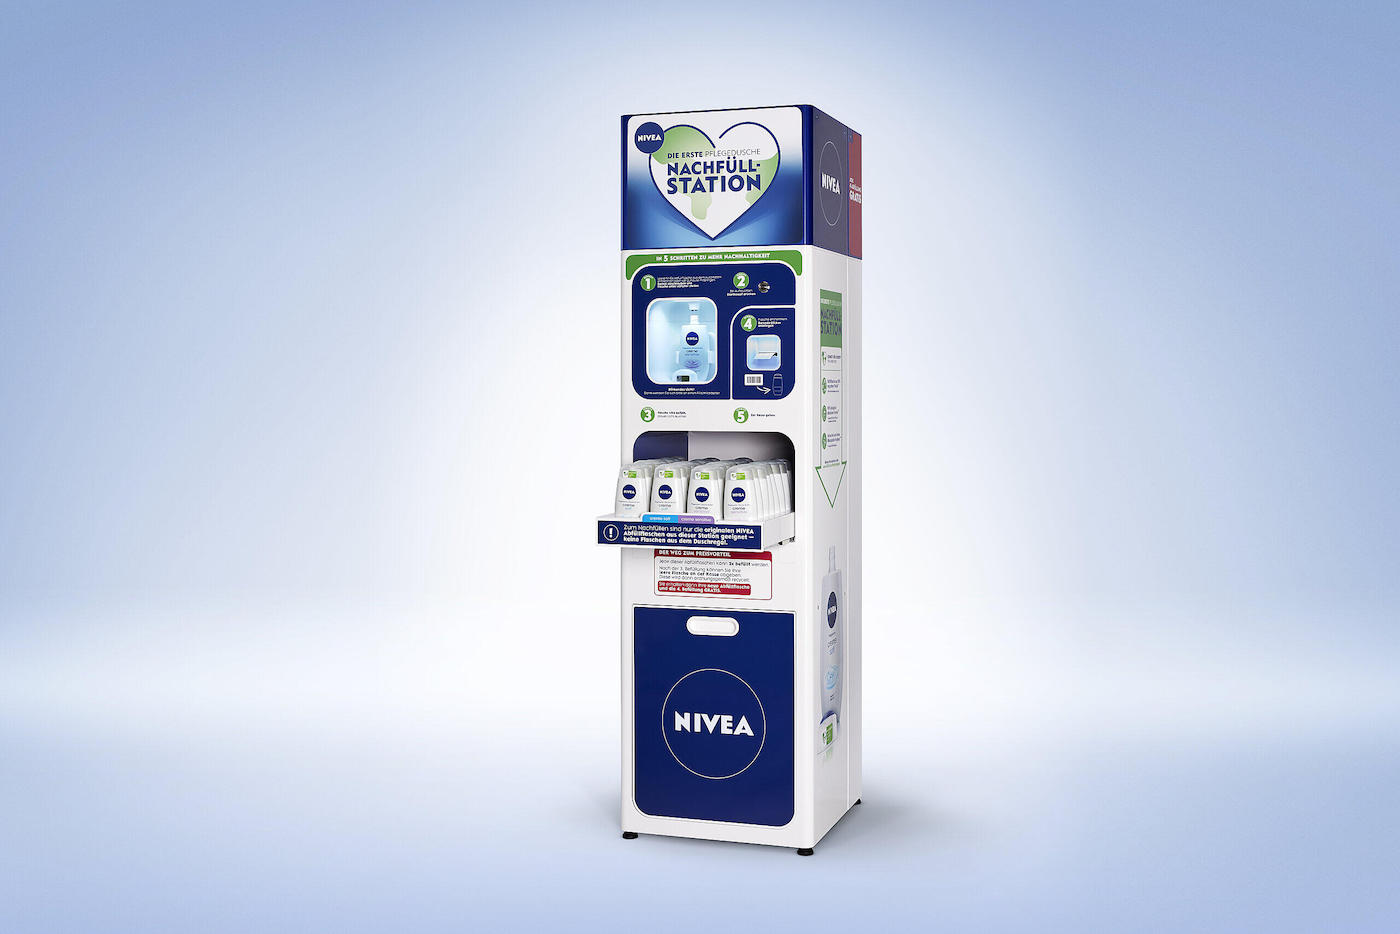 Pour limiter les emballages, Nivea permet de recharger son gel douche en magasin